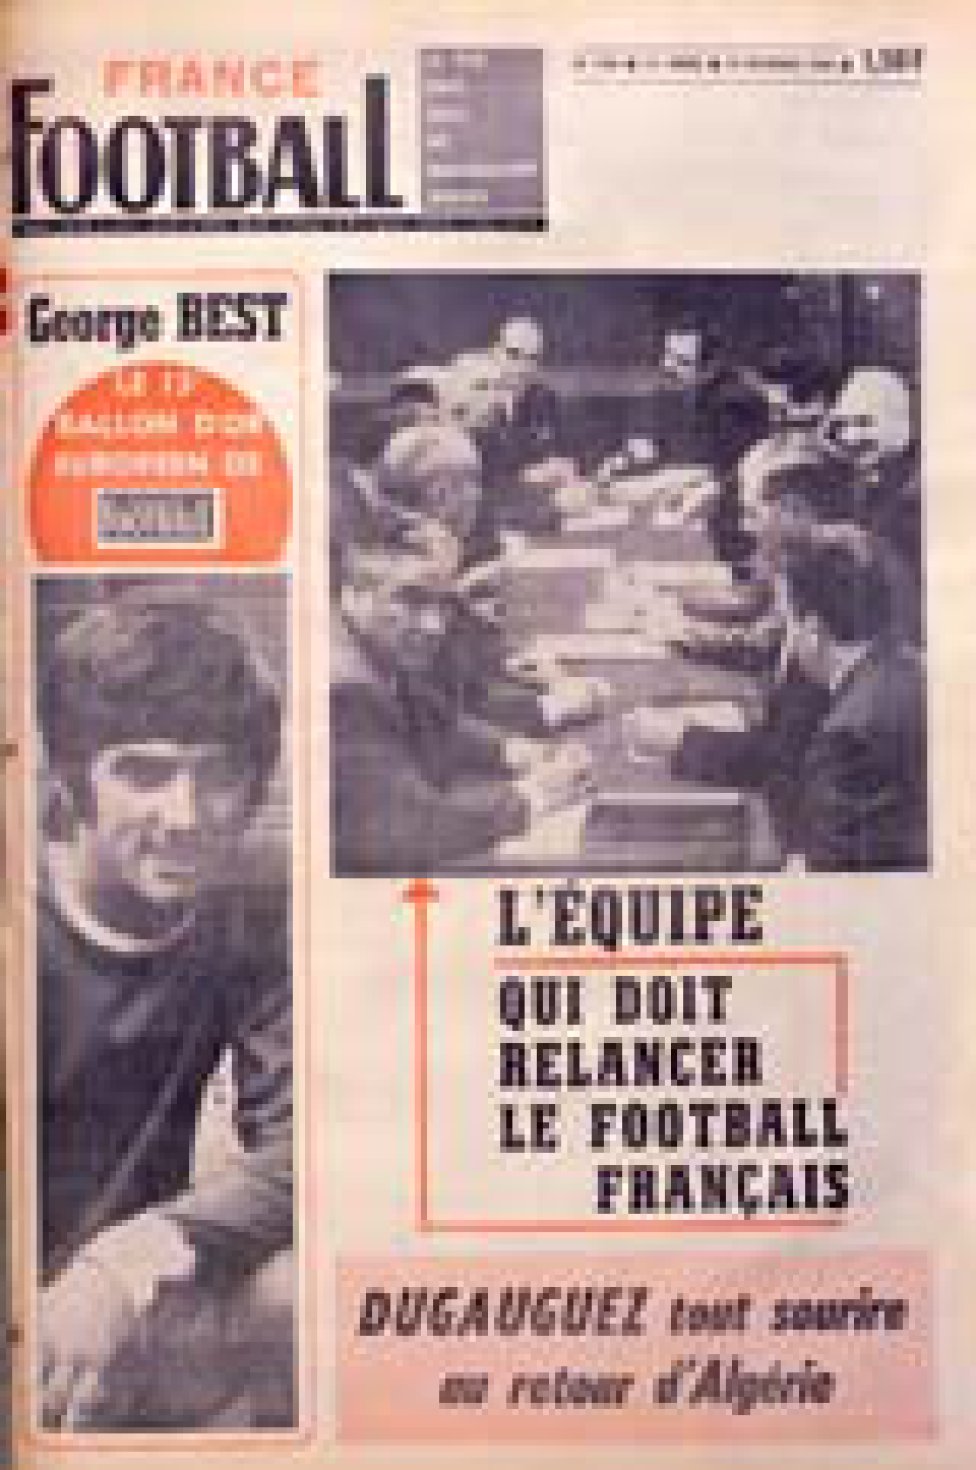 1968. george Best